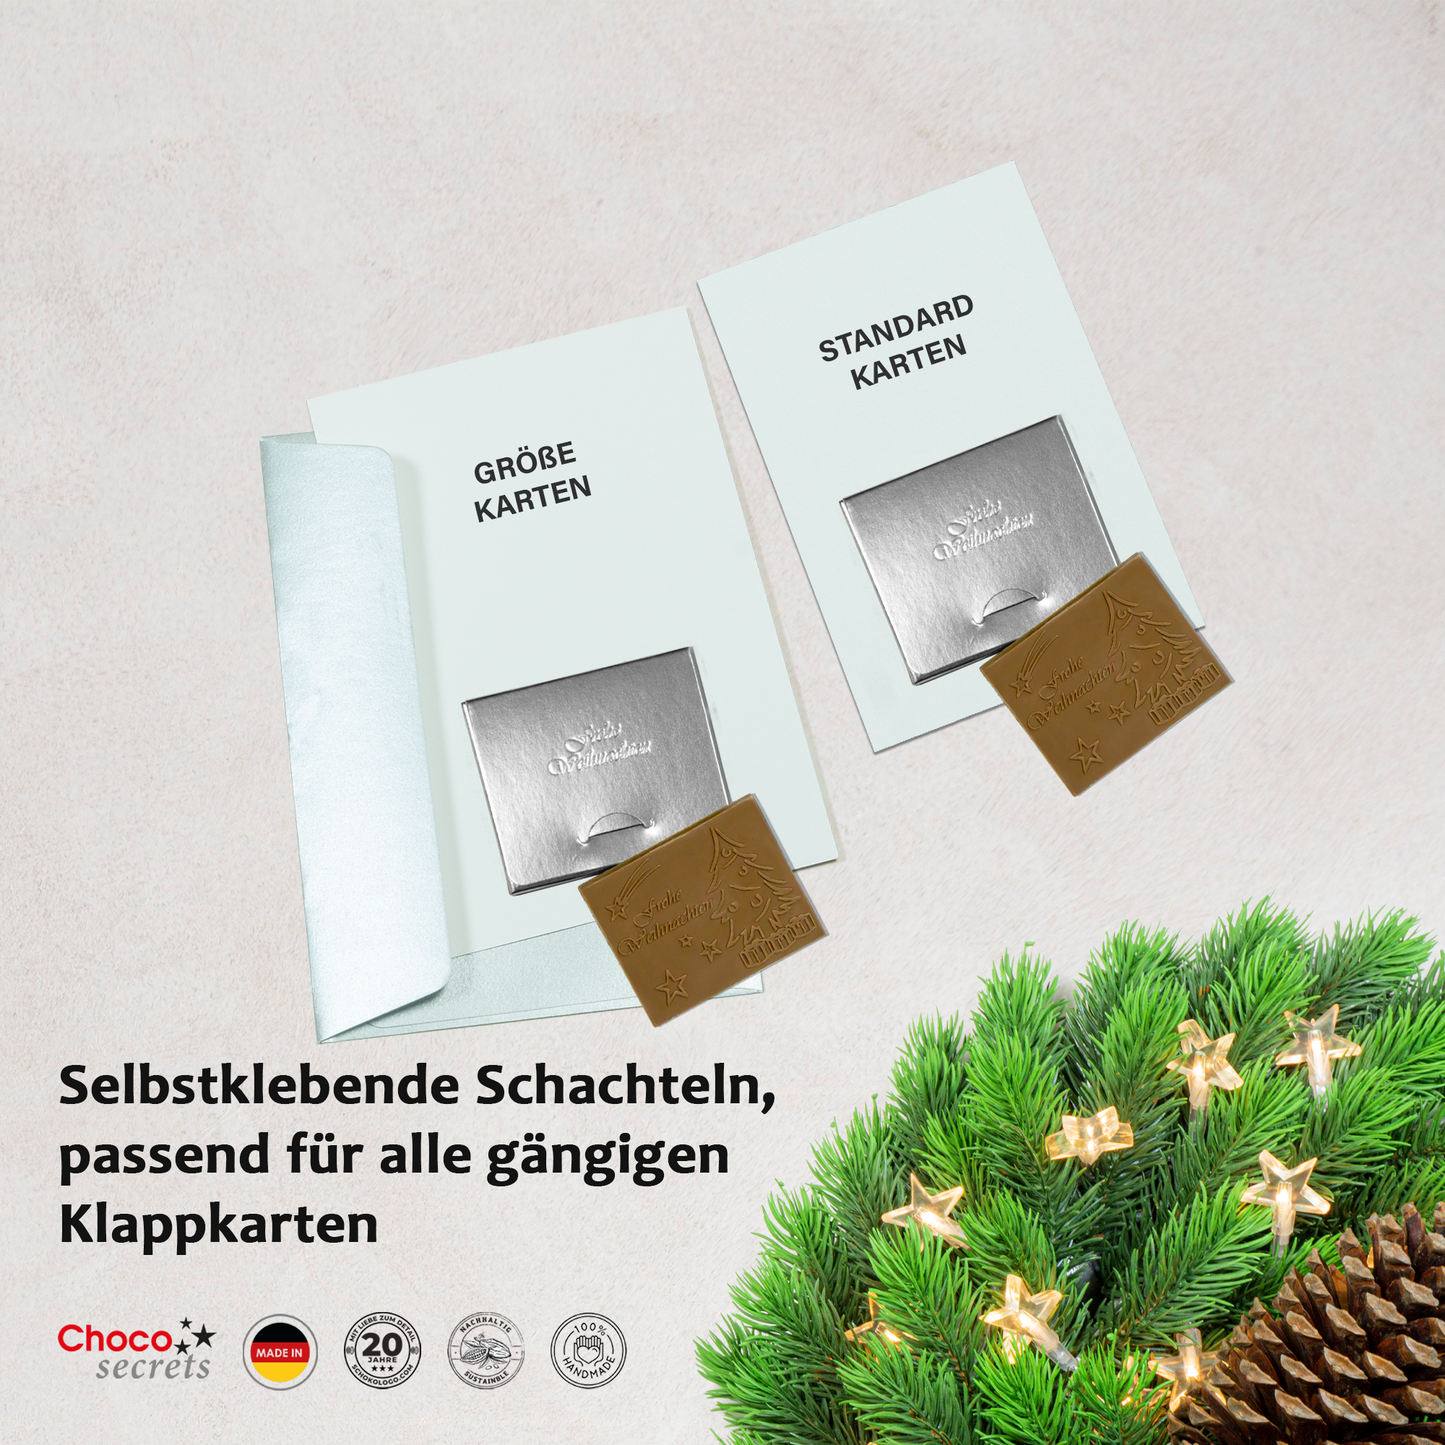 DIY Schoko-Weihnachtstafel zum selber kleben auf eine Weihnachtskarte | Schachtel und Schokolade mit Prägung : „Frohe Weihnachten“ 